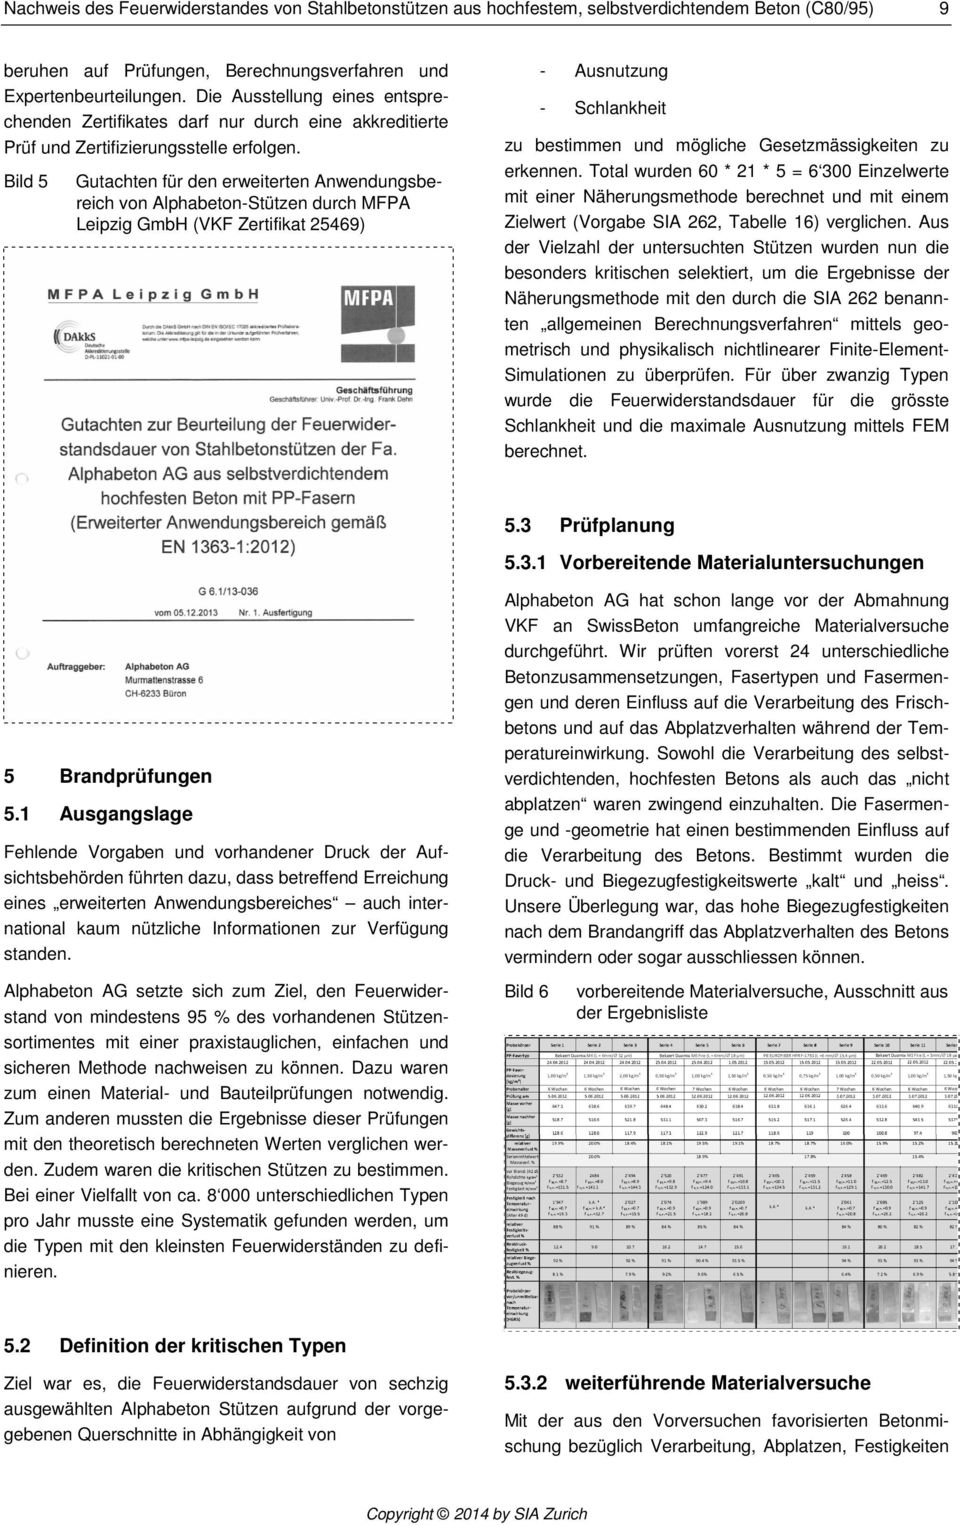 Bild 5 Gutachten für den erweiterten Anwendungsbereich von Alphabeton-Stützen durch MFPA Leipzig GmbH (VKF Zertifikat 25469) - Ausnutzung - Schlankheit zu bestimmen und mögliche Gesetzmässigkeiten zu